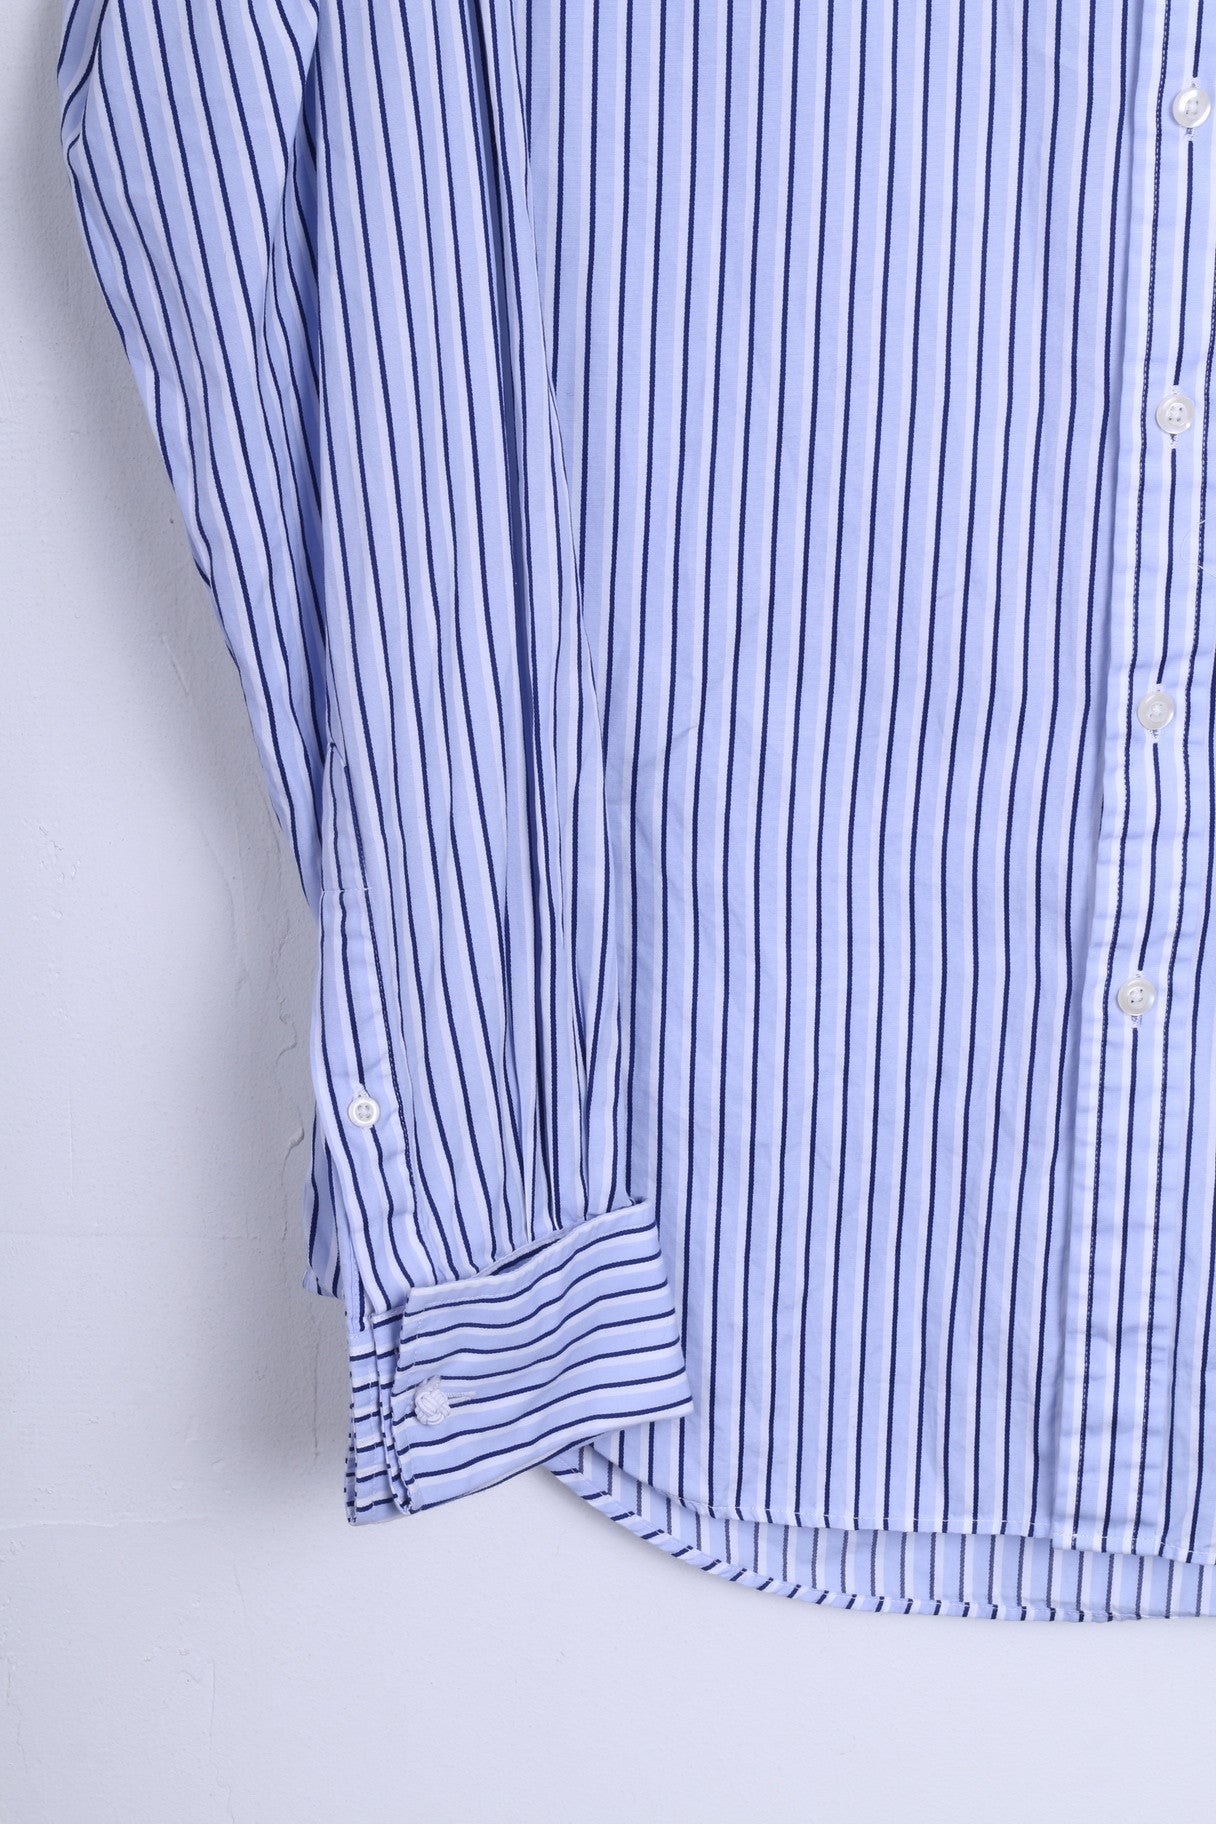 T.M. Lewin Mens 16/35 L Casual Shirt Striped Blue Slim Fit Cotton - RetrospectClothes